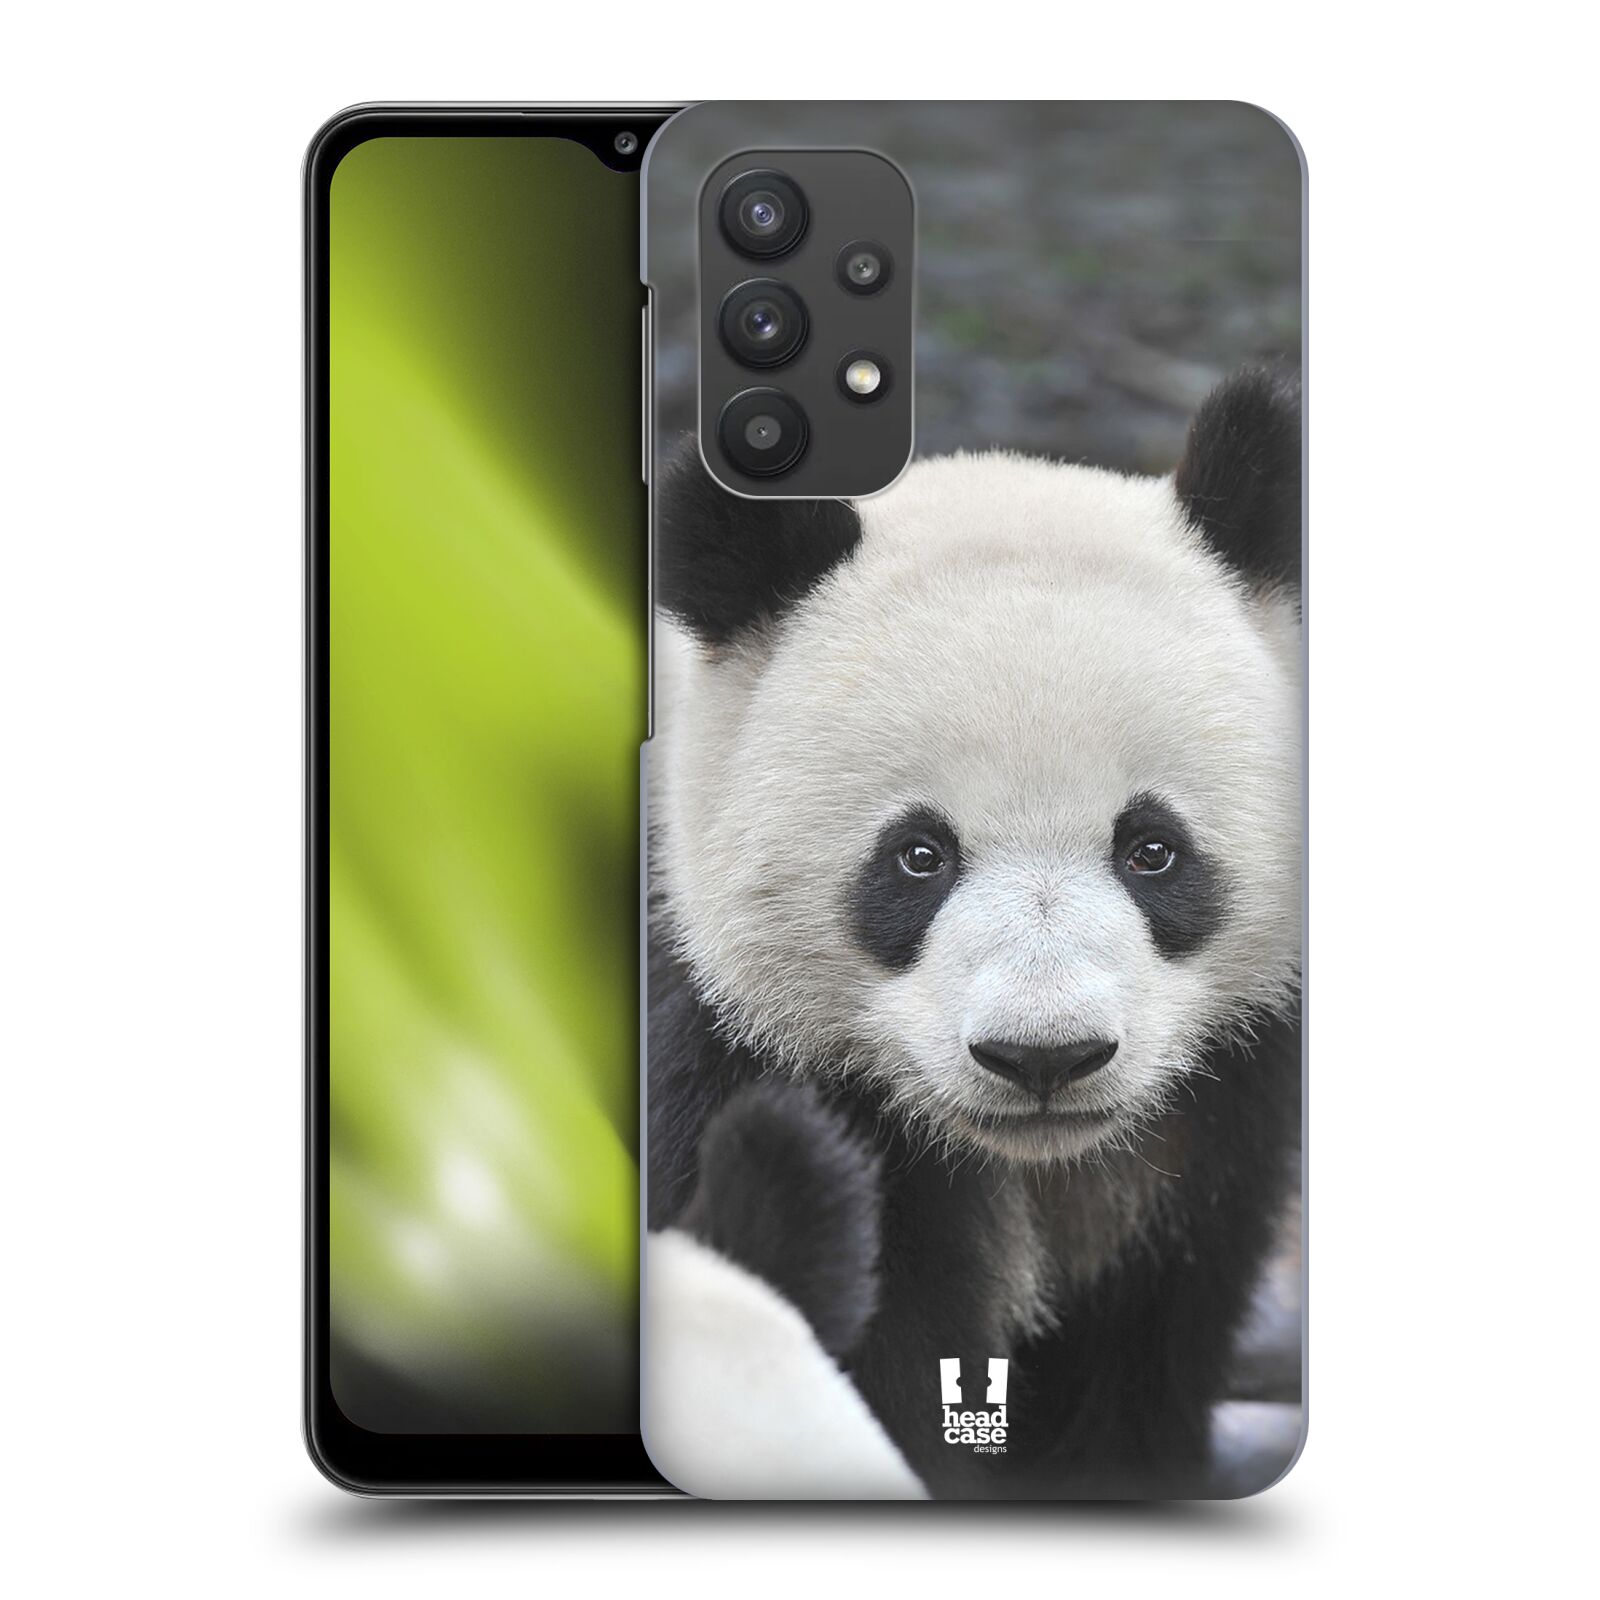 Zadní obal pro mobil Samsung Galaxy A32 5G - HEAD CASE - Svět zvířat medvěd panda